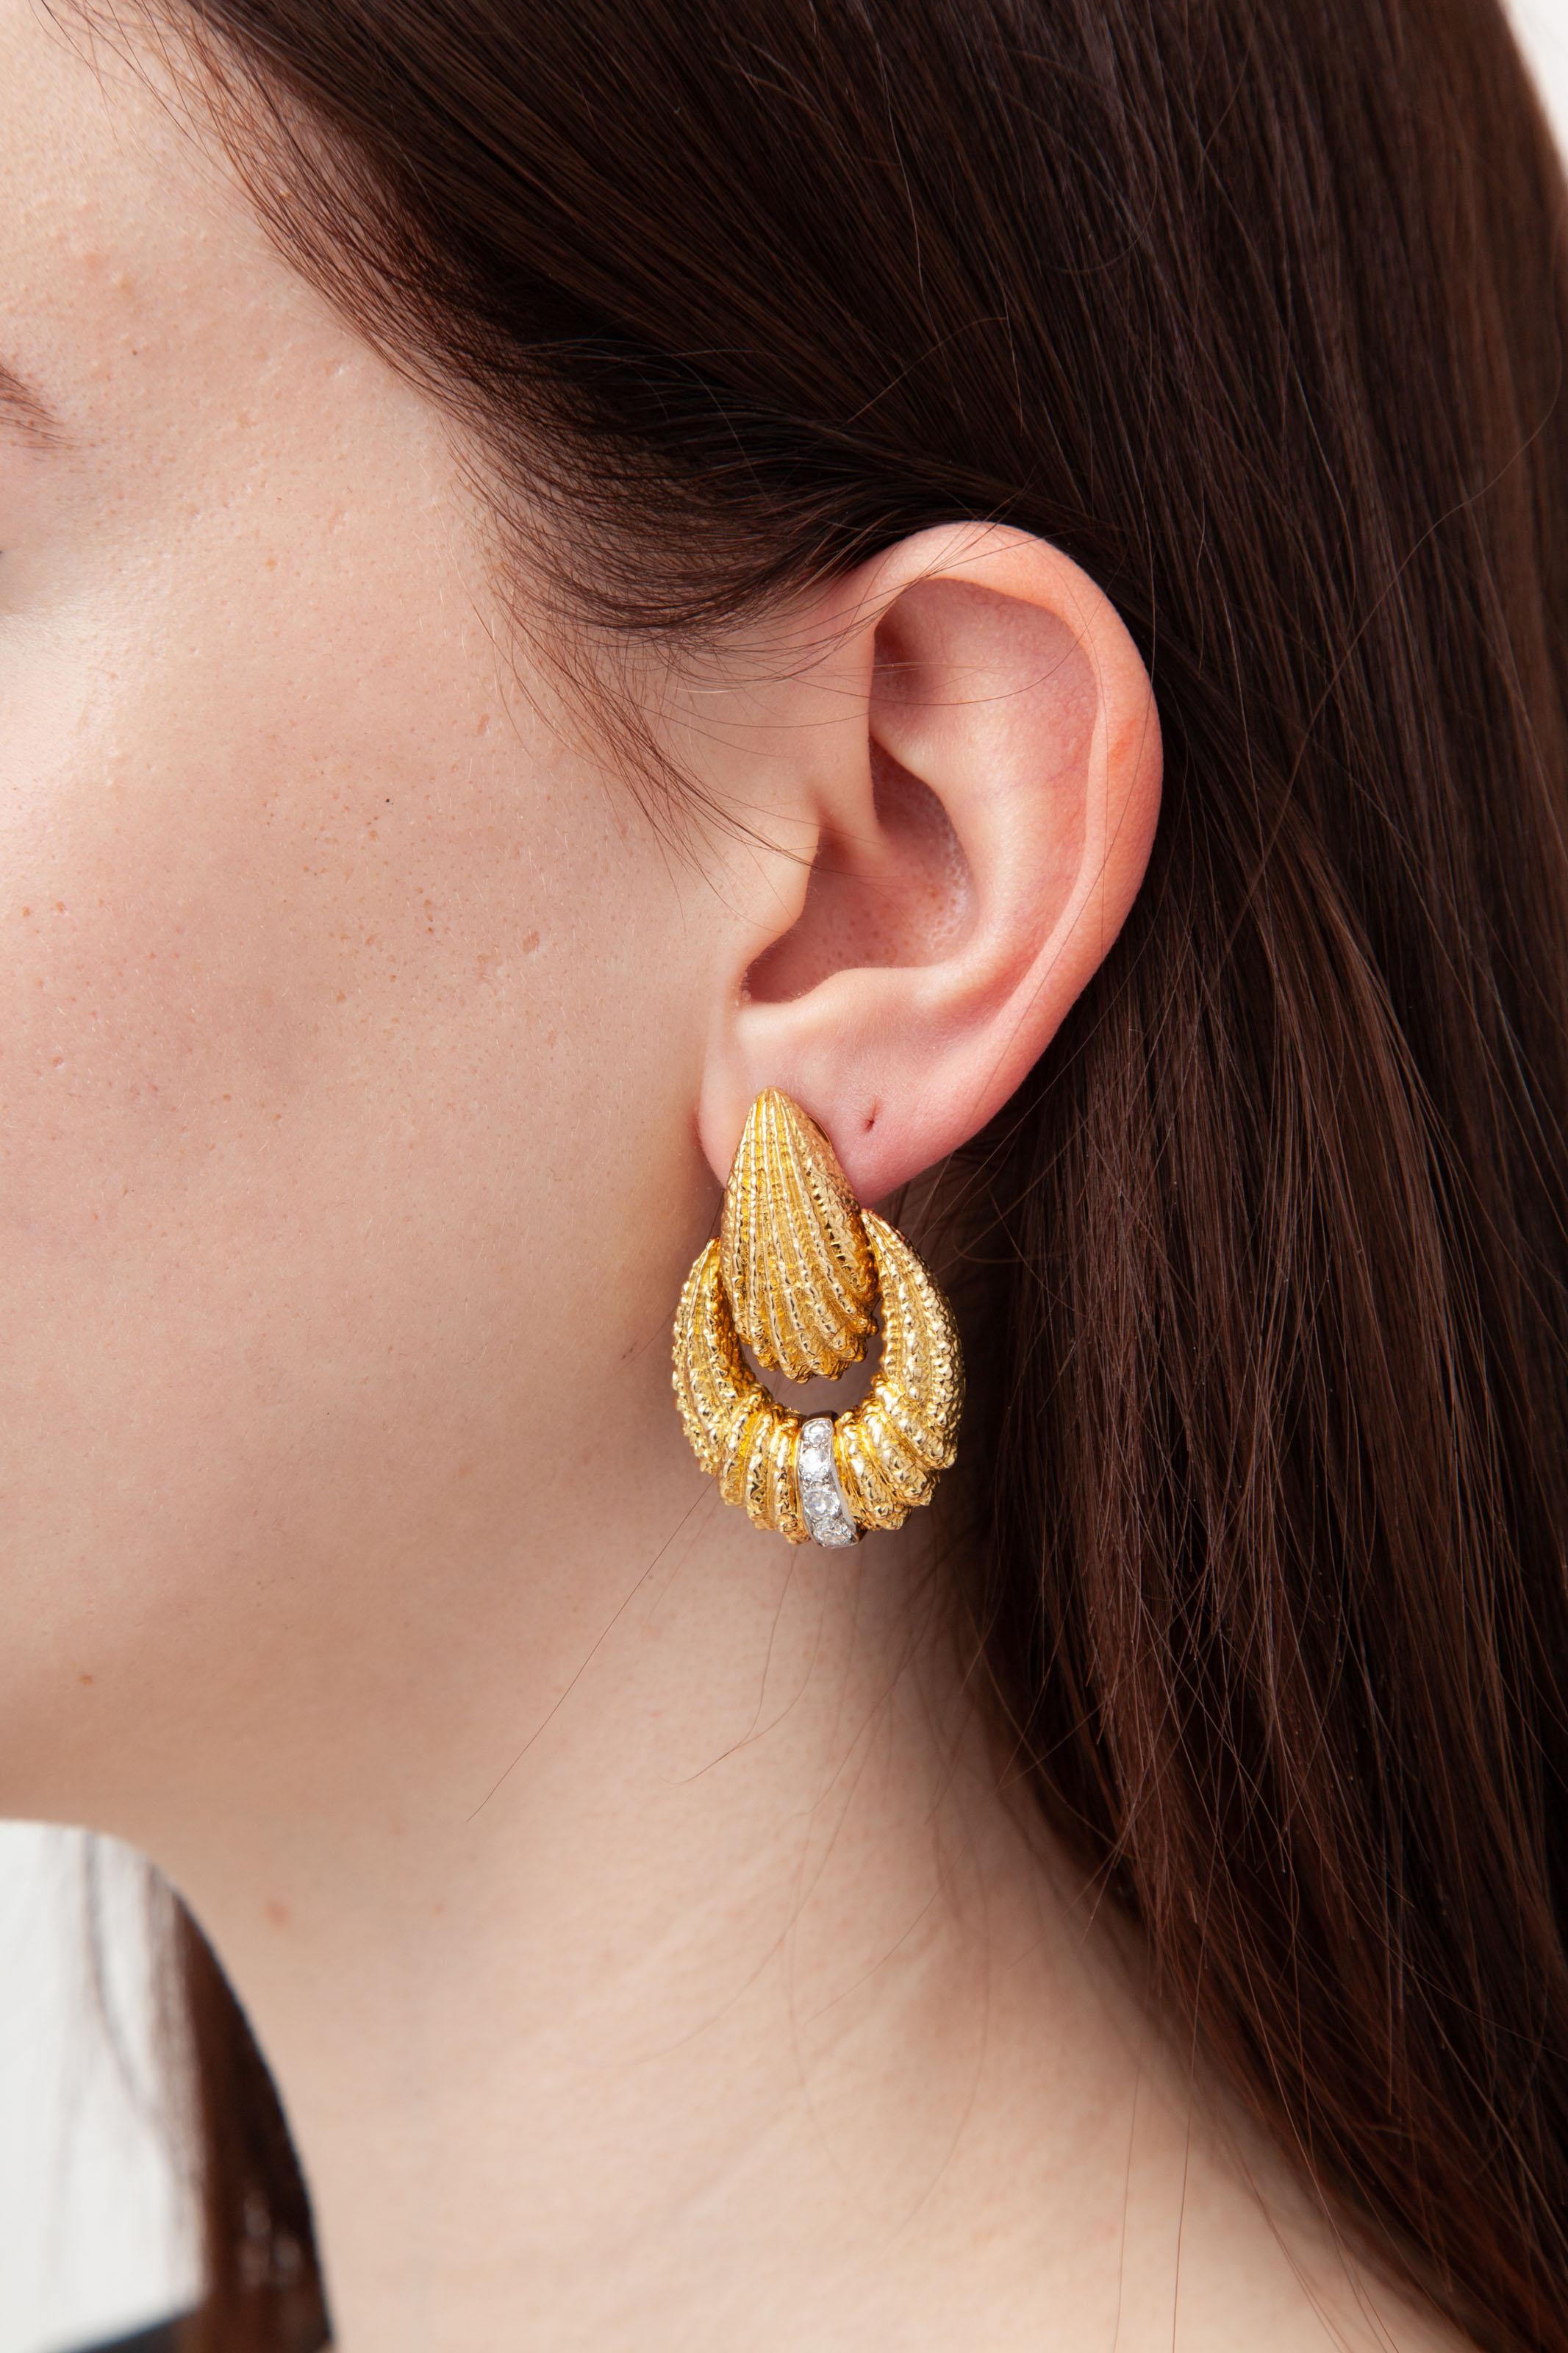 Van Cleef & Arpels Ohrringe aus Diamanten und 18kt Gold.
Mit diesen ikonischen Ohrringen aus Diamanten und 18-karätigem Gelbgold von Van Cleef & Arpels können Sie Ihren Stil aufwerten. Sehr guter Zustand, signiert '750' V.C.A. und B3007R2. Ein Hauch